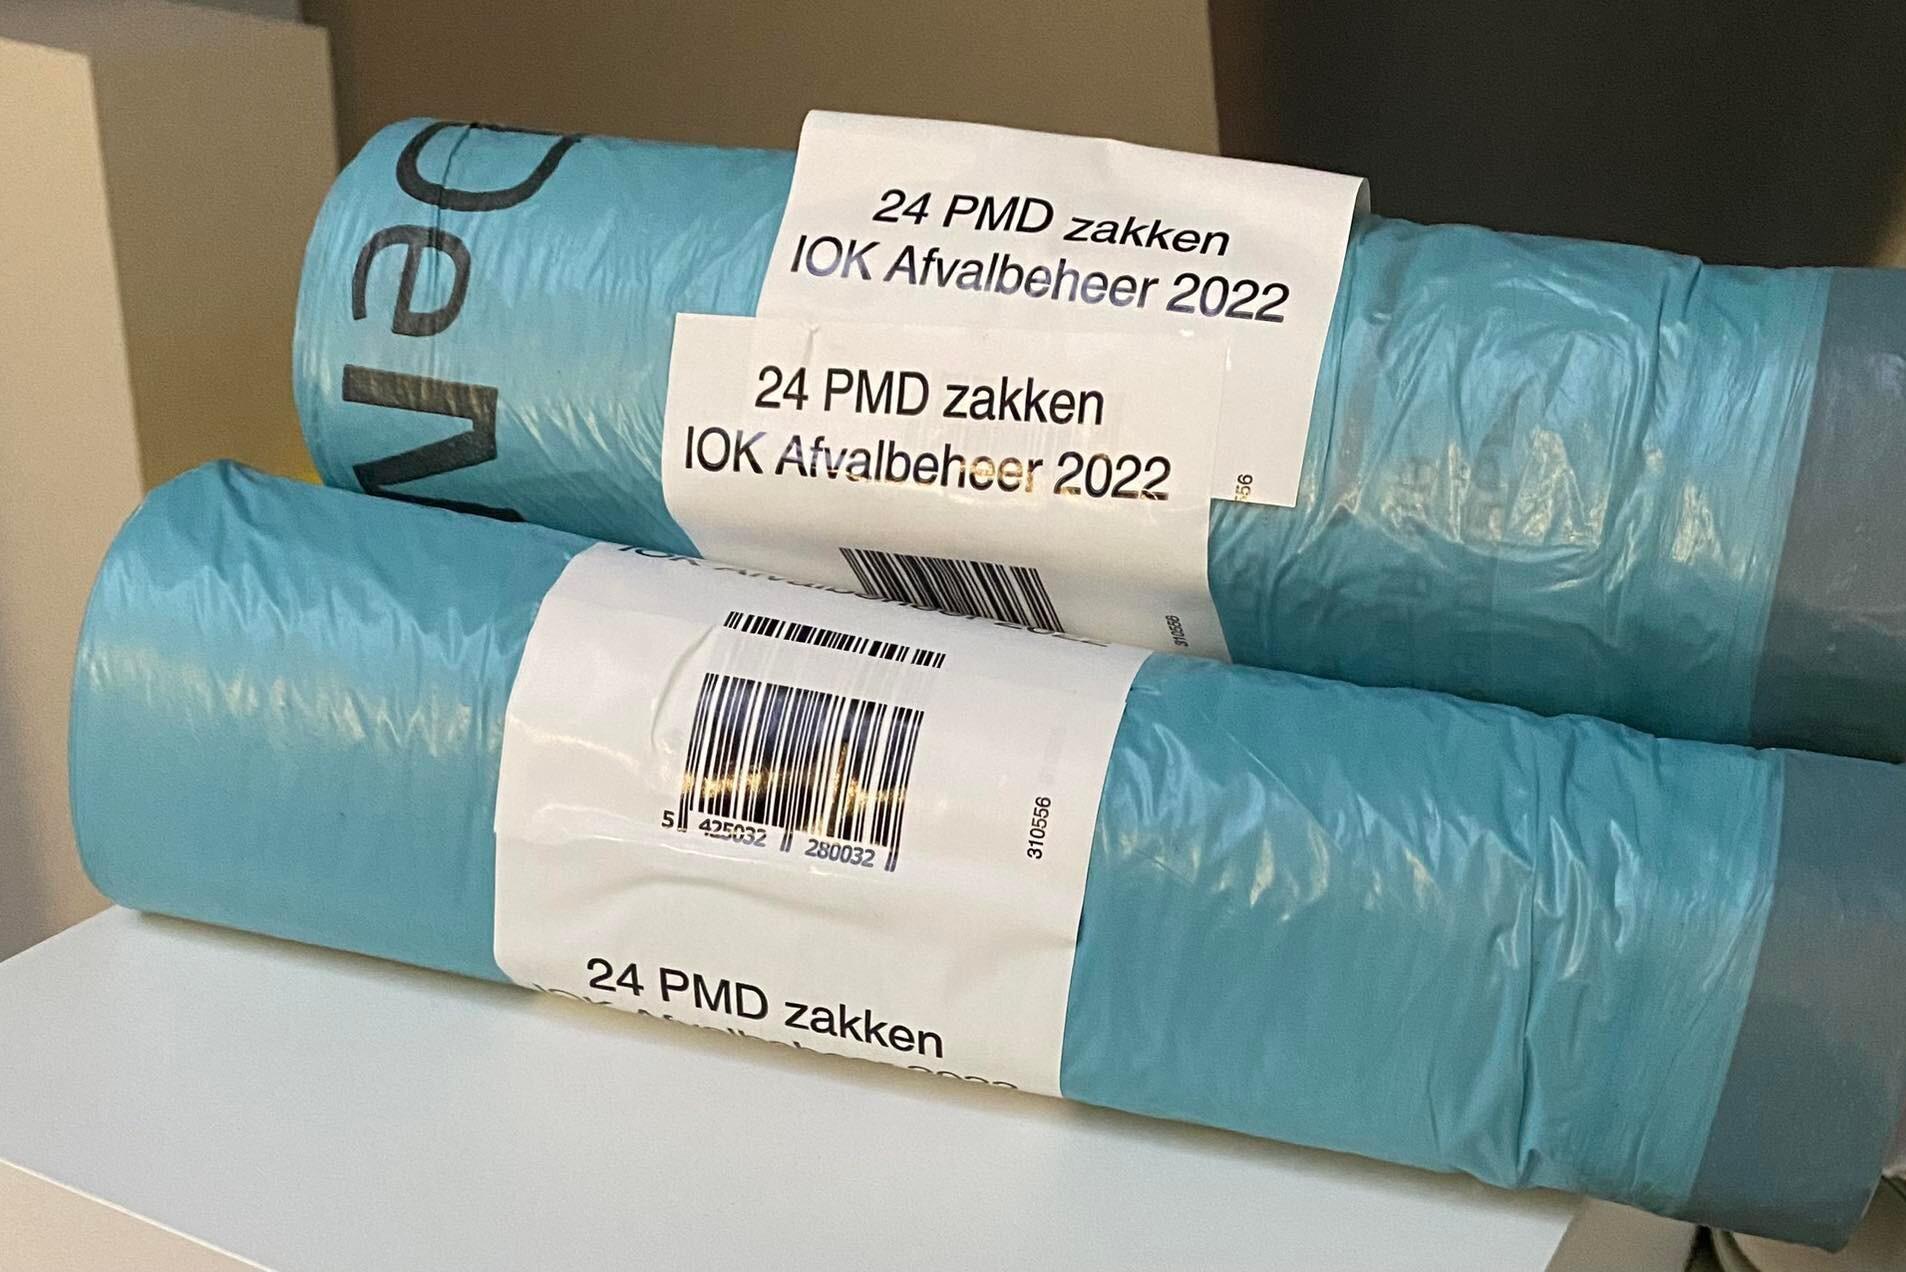 Pmd-zakken voortaan ook te koop in supermarkt: gemeente sluit deal met Delhaize en Okay (Arendonk) Gazet van Antwerpen Mobile